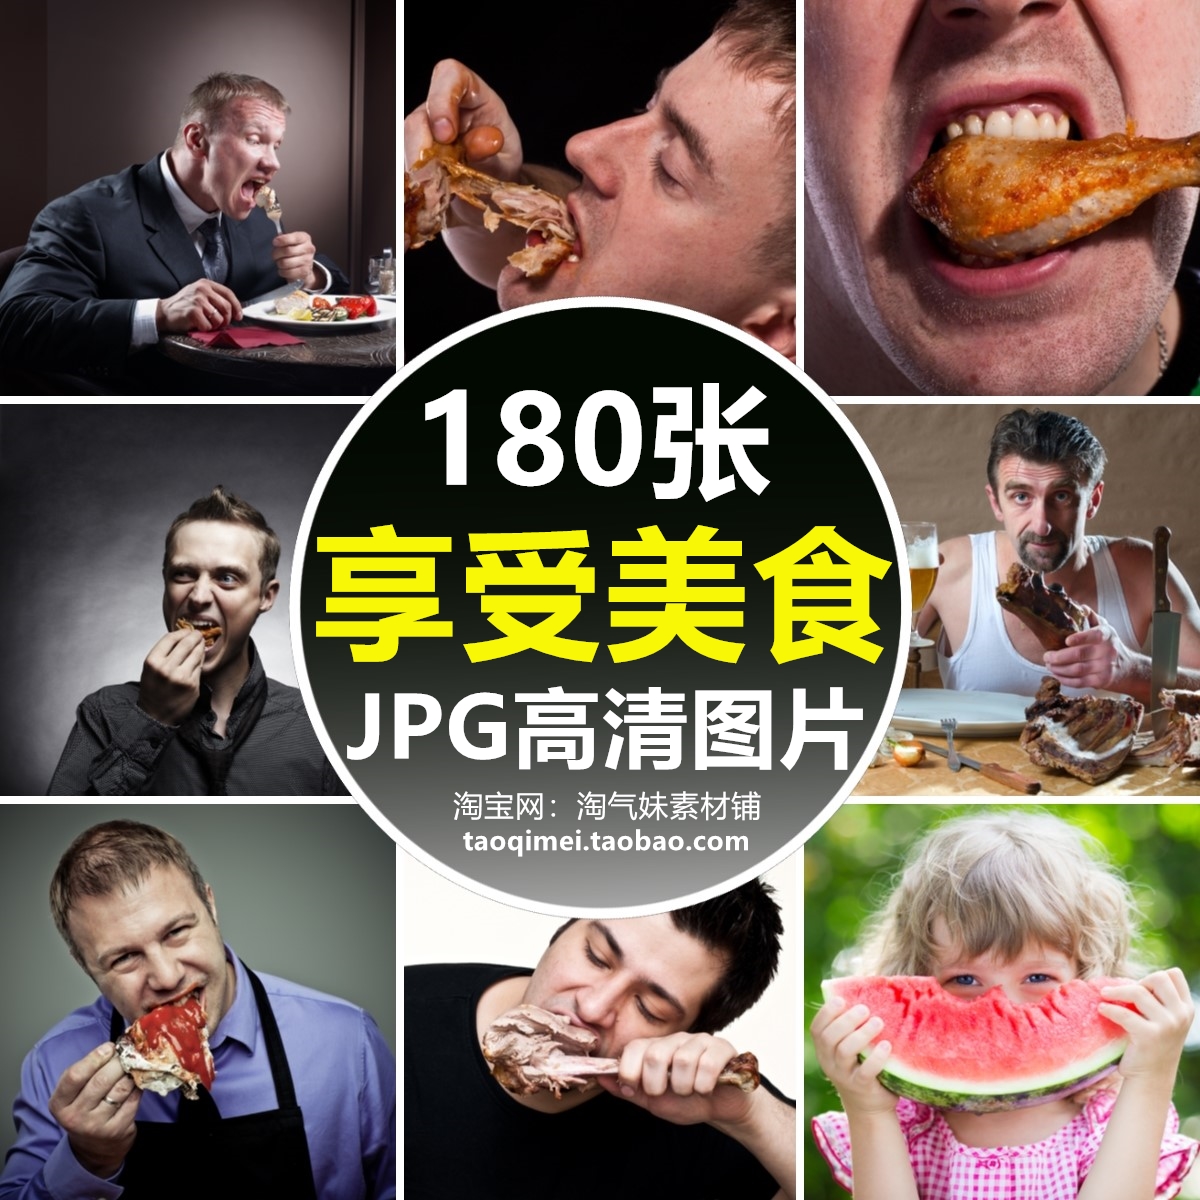 高清JPG享受美食图片吃东西吃水果零食美味享用食物人物生活素材